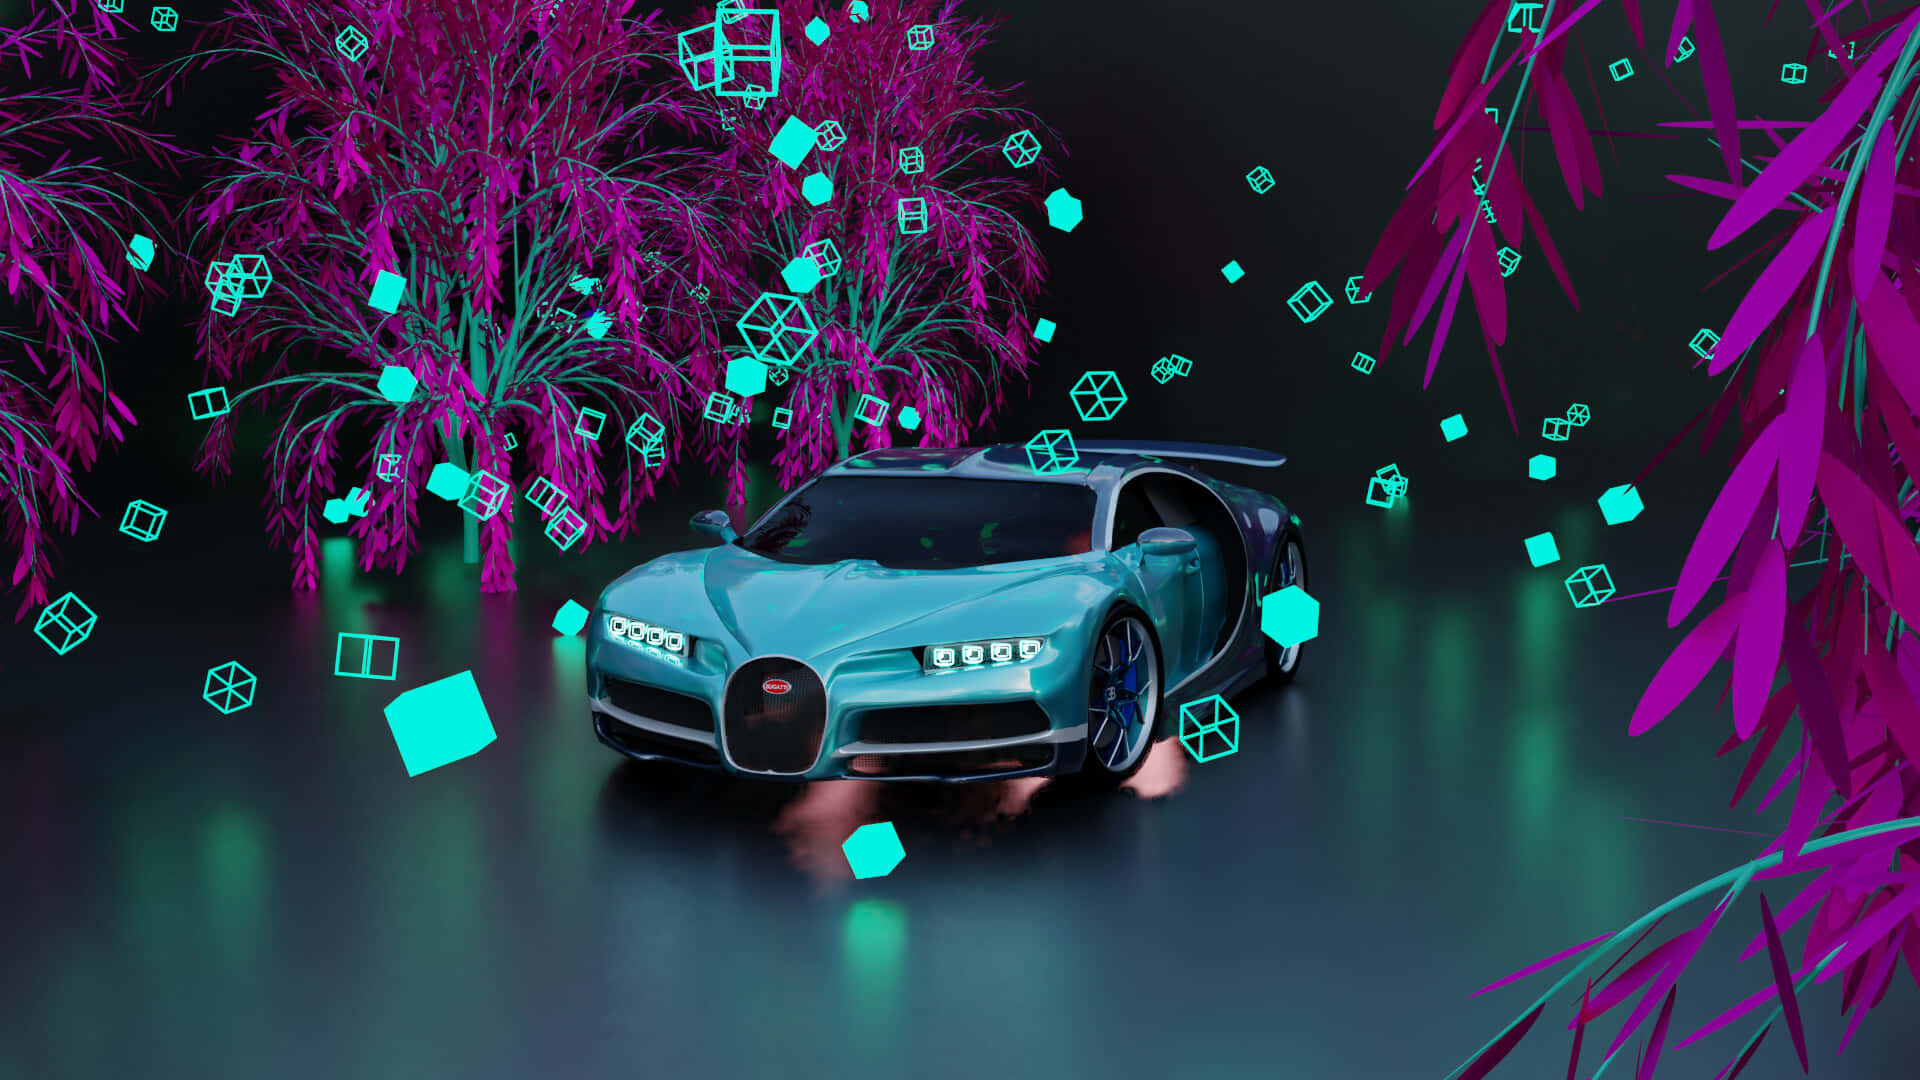 Snygg,snabb Och Elegant - Den Neonfärgade Bugattin. Wallpaper